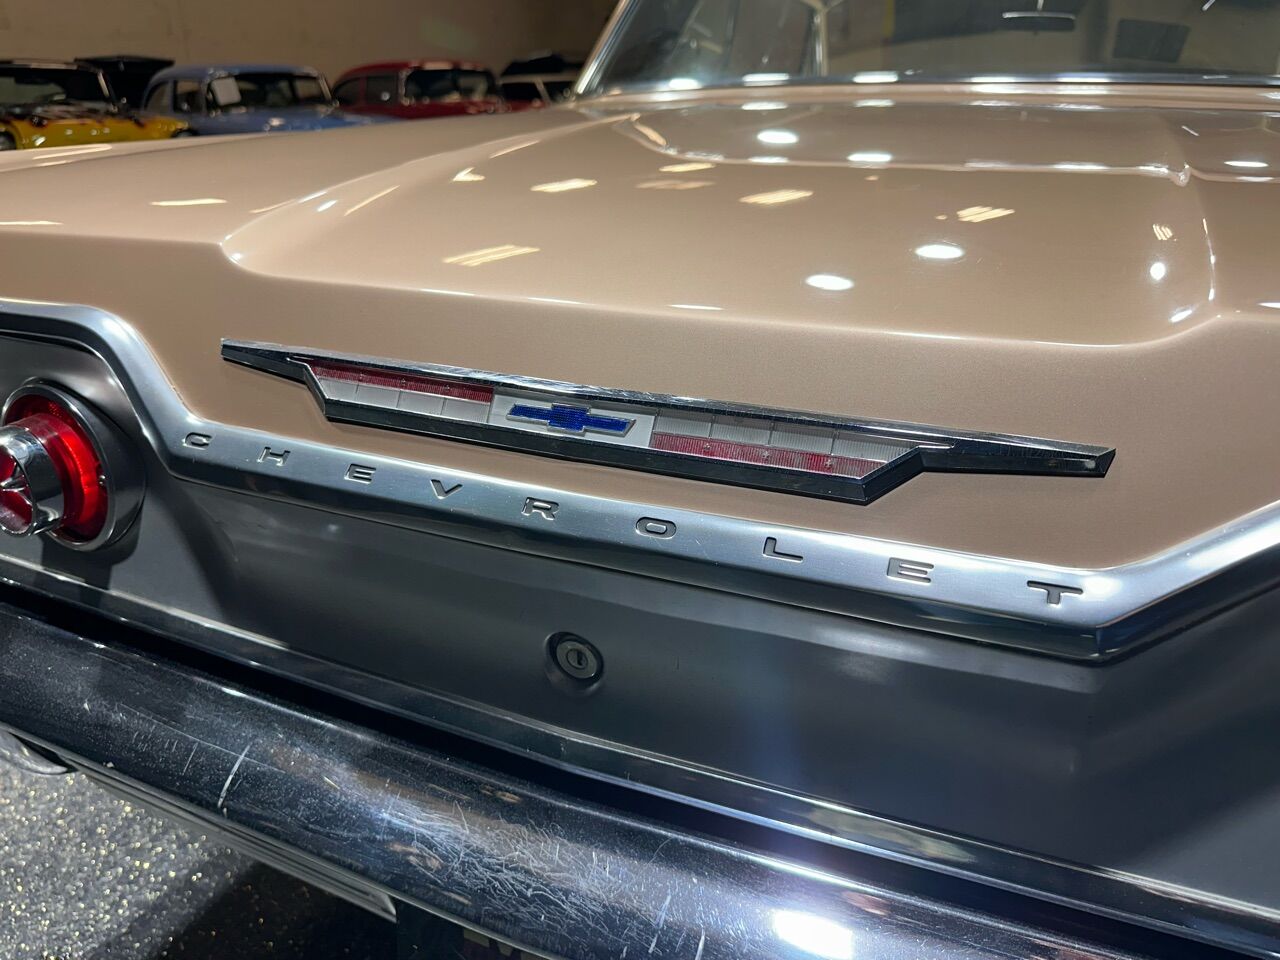 1963 Chevrolet Impala 29